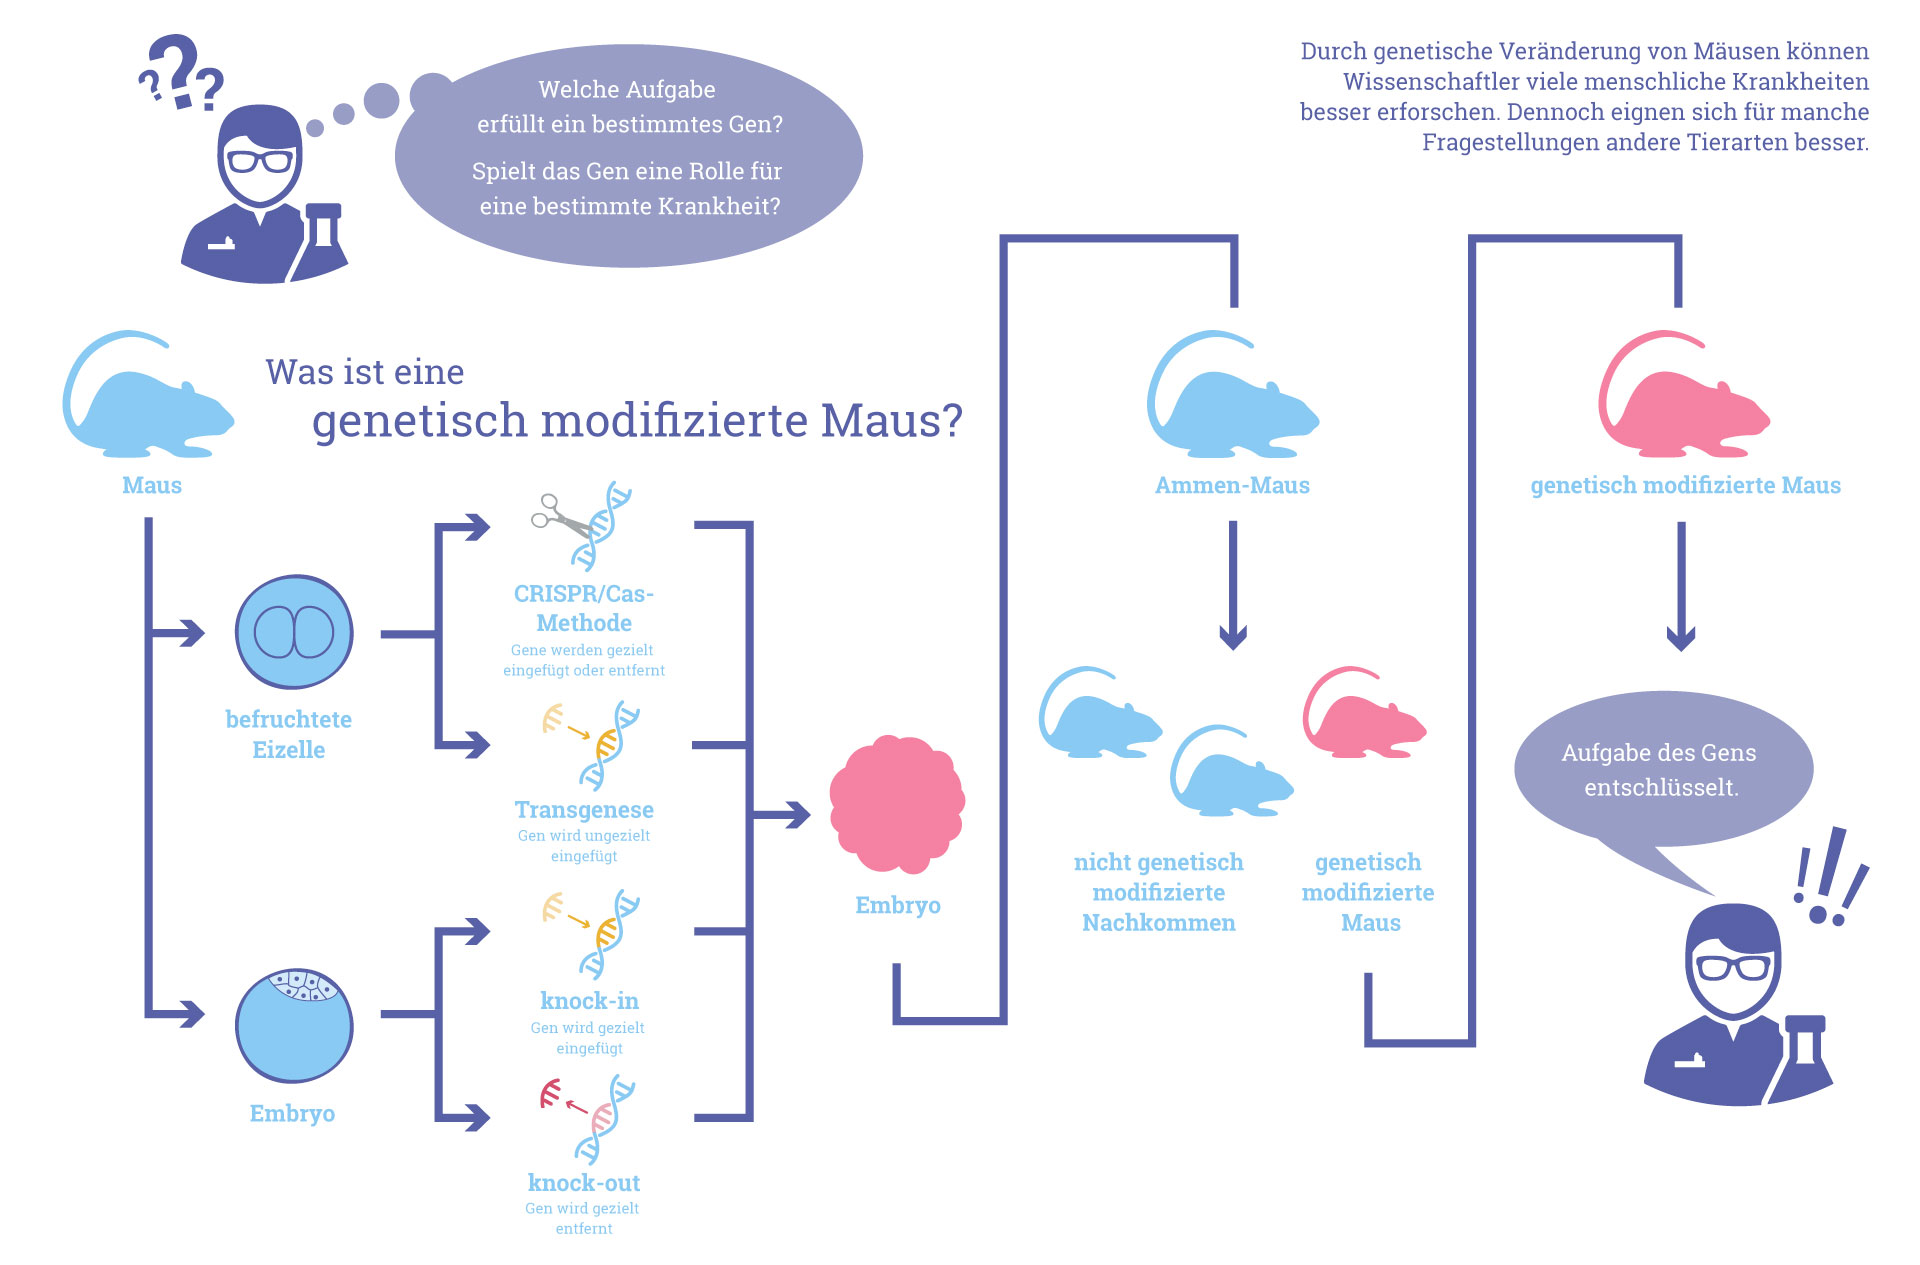 Grafik: Was ist eine genetisch modifizierte Maus?